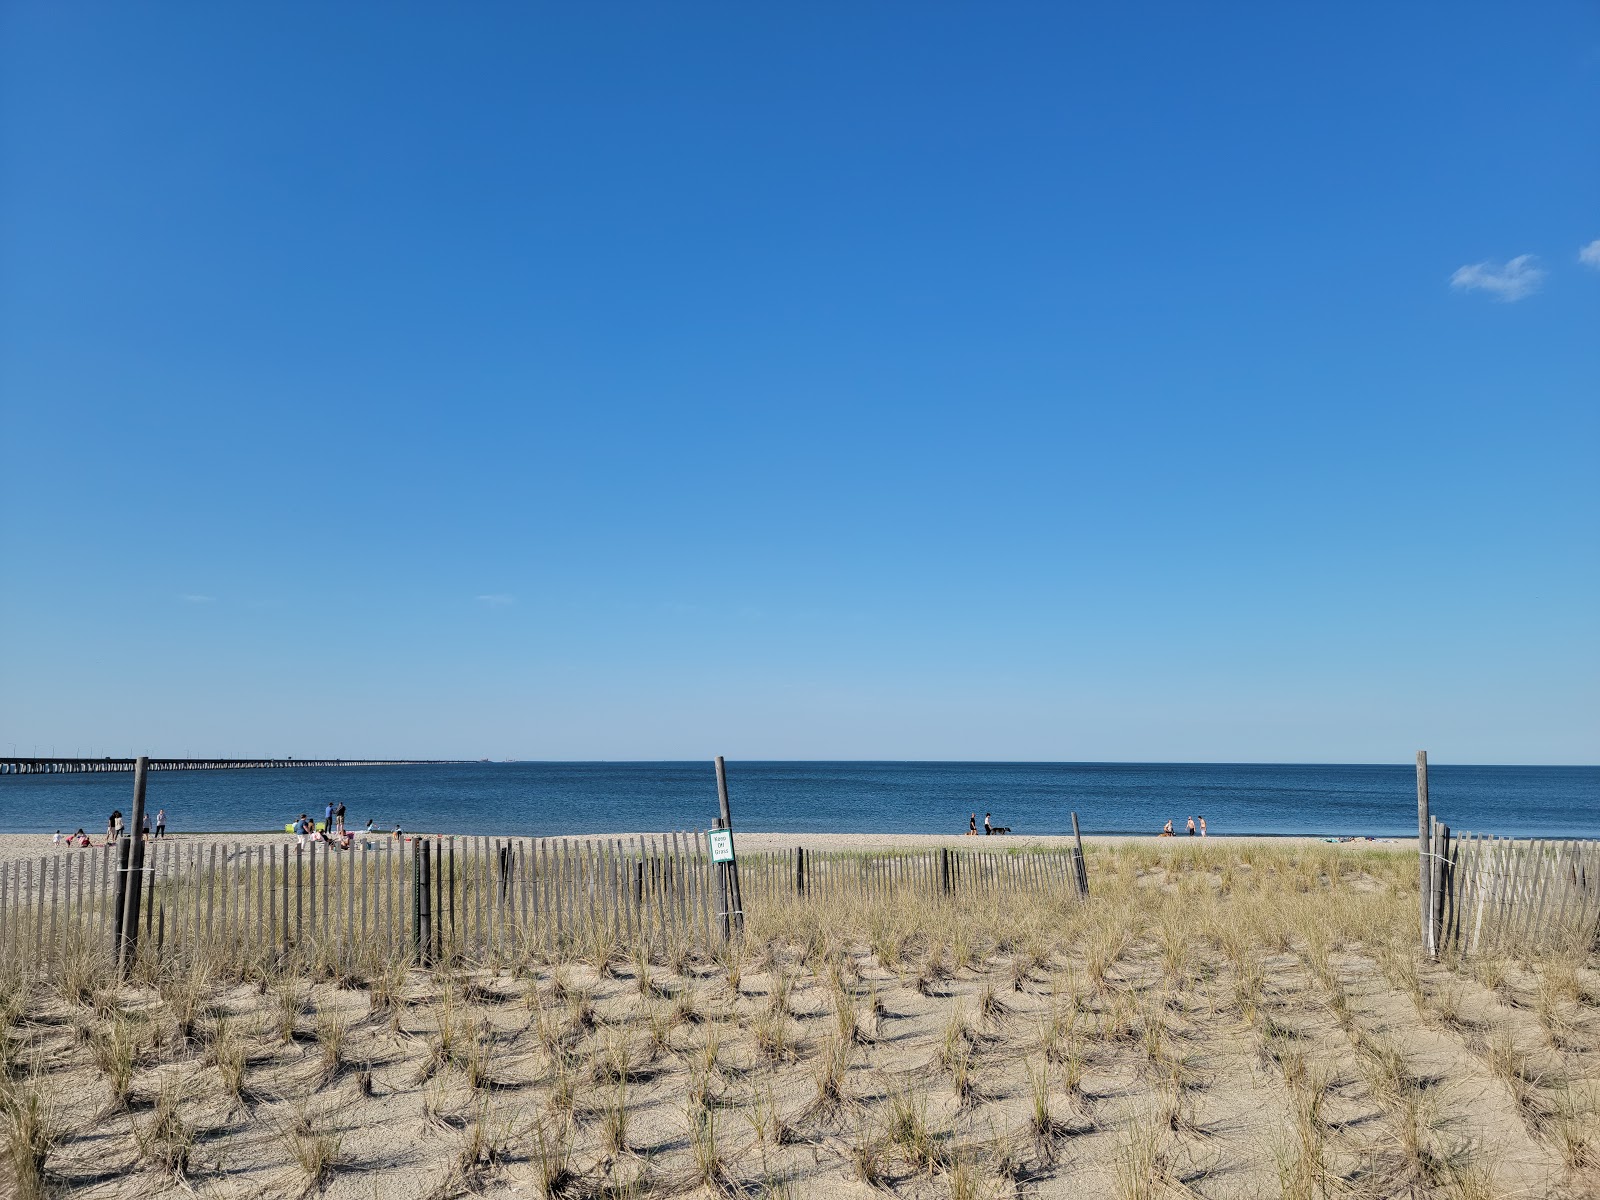 Photo de Chic's beach - endroit populaire parmi les connaisseurs de la détente